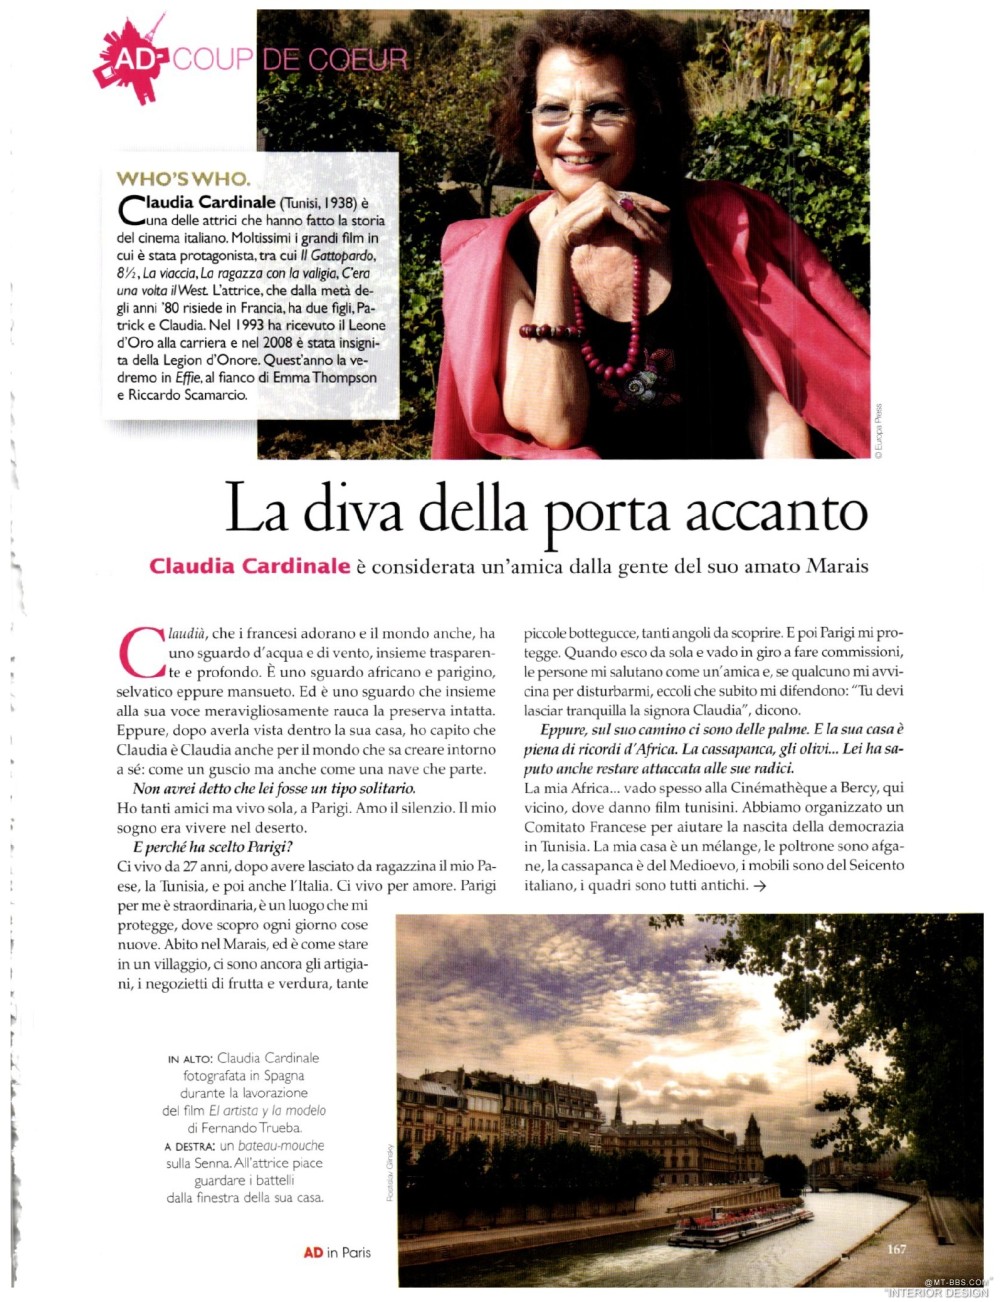 意大利AD 杂志 2012年全年JPG高清版本 全免（上传完毕）_0169.jpg